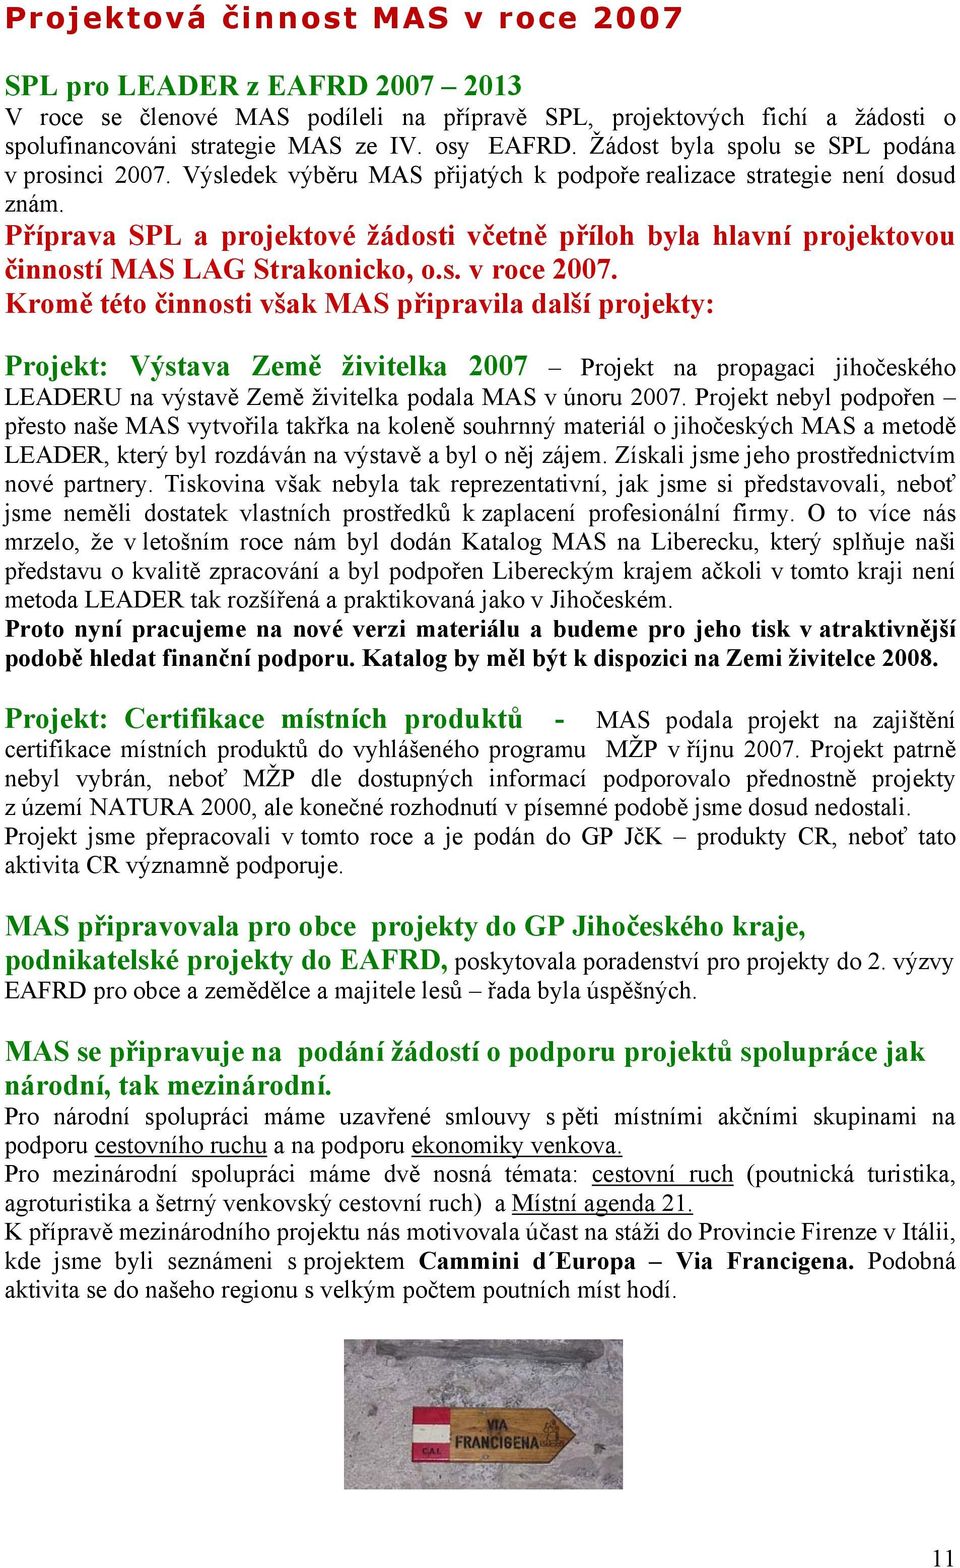 Příprava SPL a projektové žádosti včetně příloh byla hlavní projektovou činností MAS LAG Strakonicko, o.s. v roce 2007.